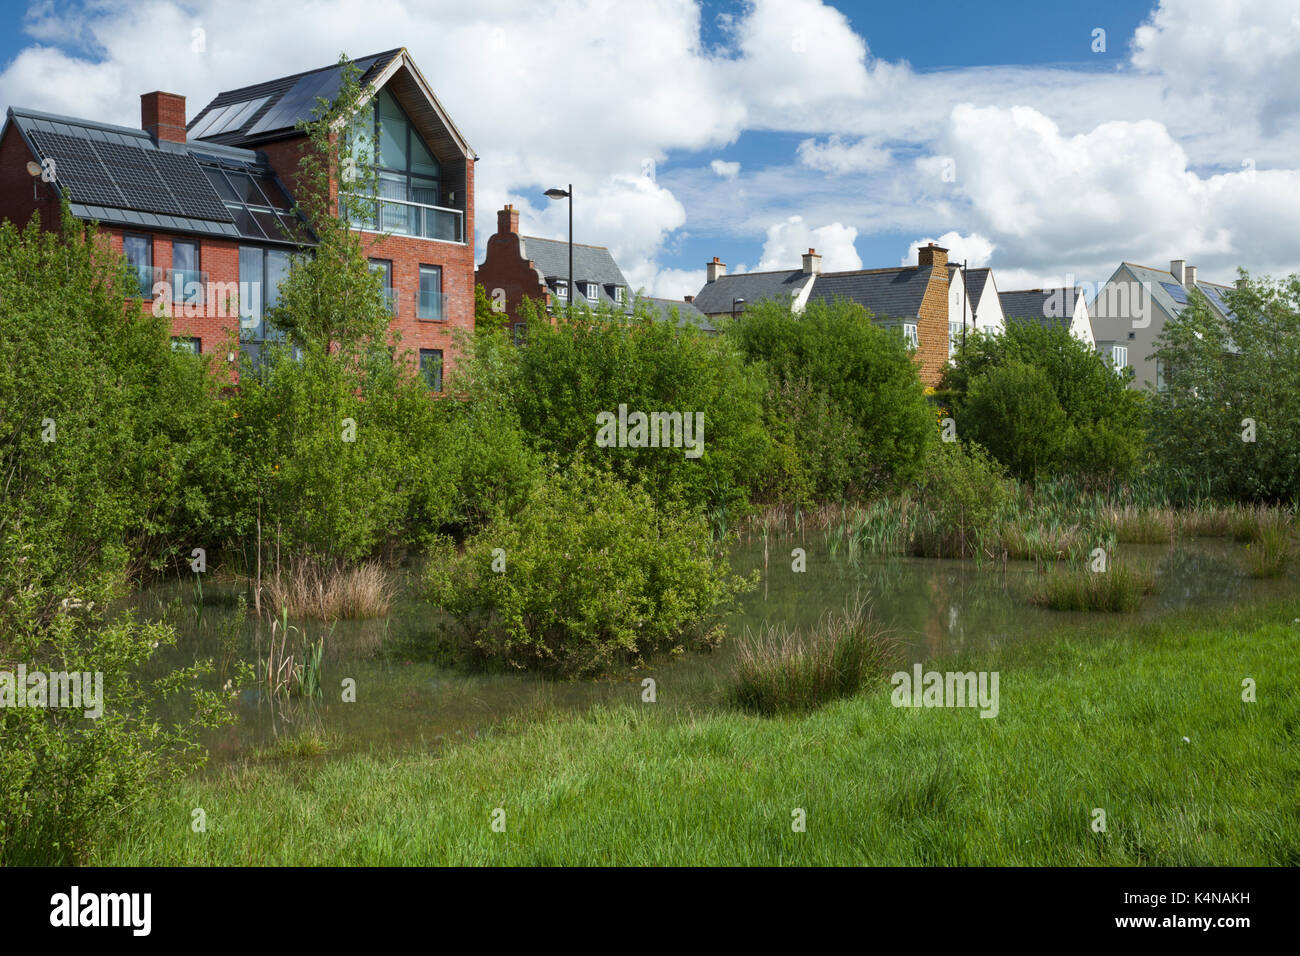 Eine Mischung aus zeitgenössischen architektonischen Stile neben Parklandschaft mit Wildtieren - freundliche Kanten und Feuchtgebieten für Regenwasser erfassen, Northampton, England. Stockfoto